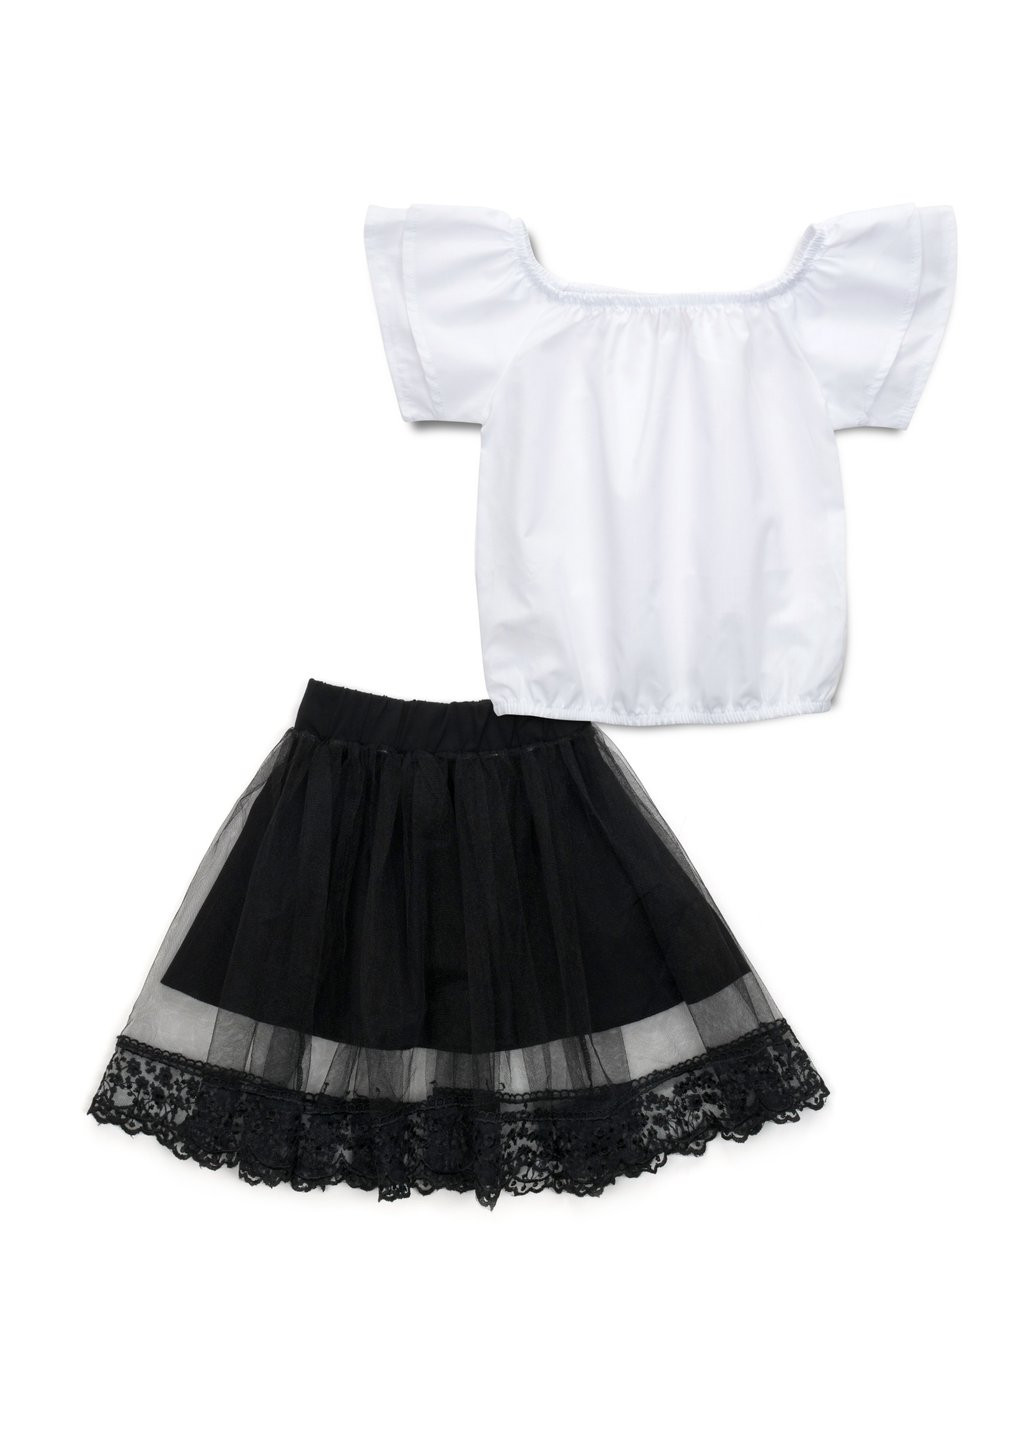 Комбинированный демисезонный набор детской одежды блуза с юбкой (287-116g-white) H.A